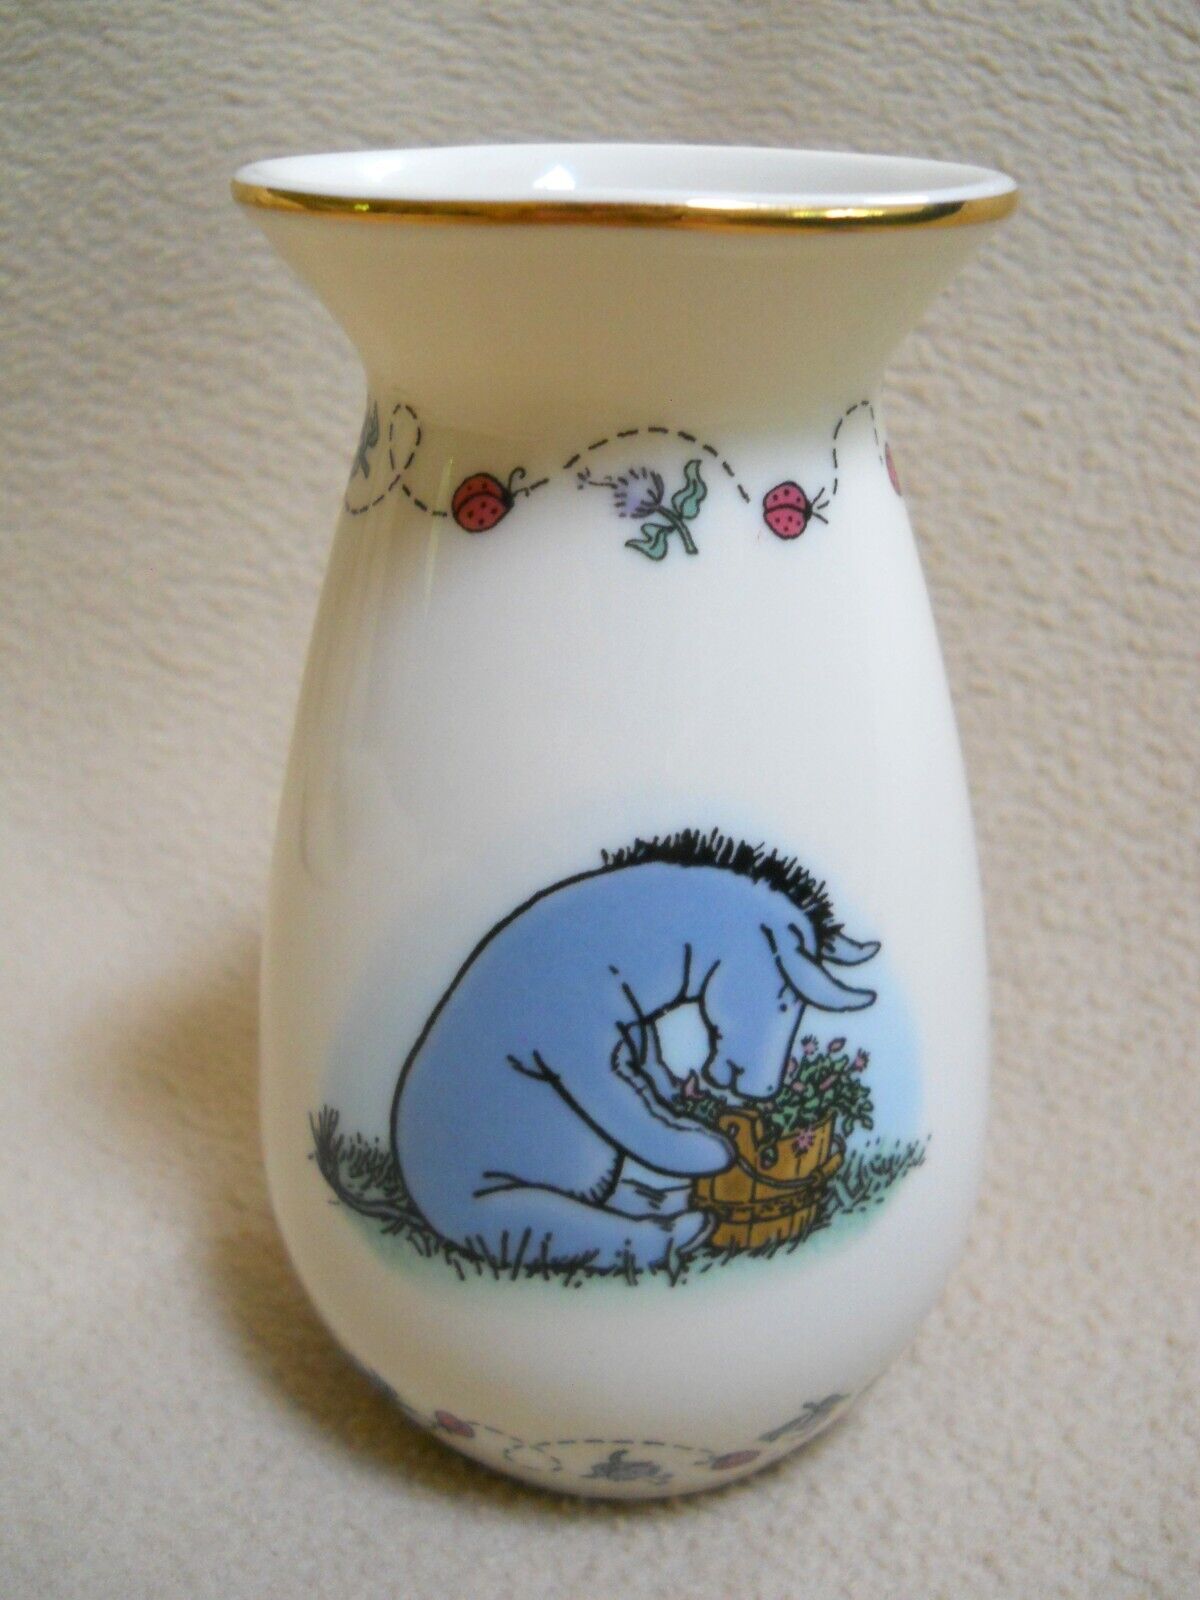 2002 Lenox Disney Eeyore Vase / Friendship in Bloom / Winnie the Pooh